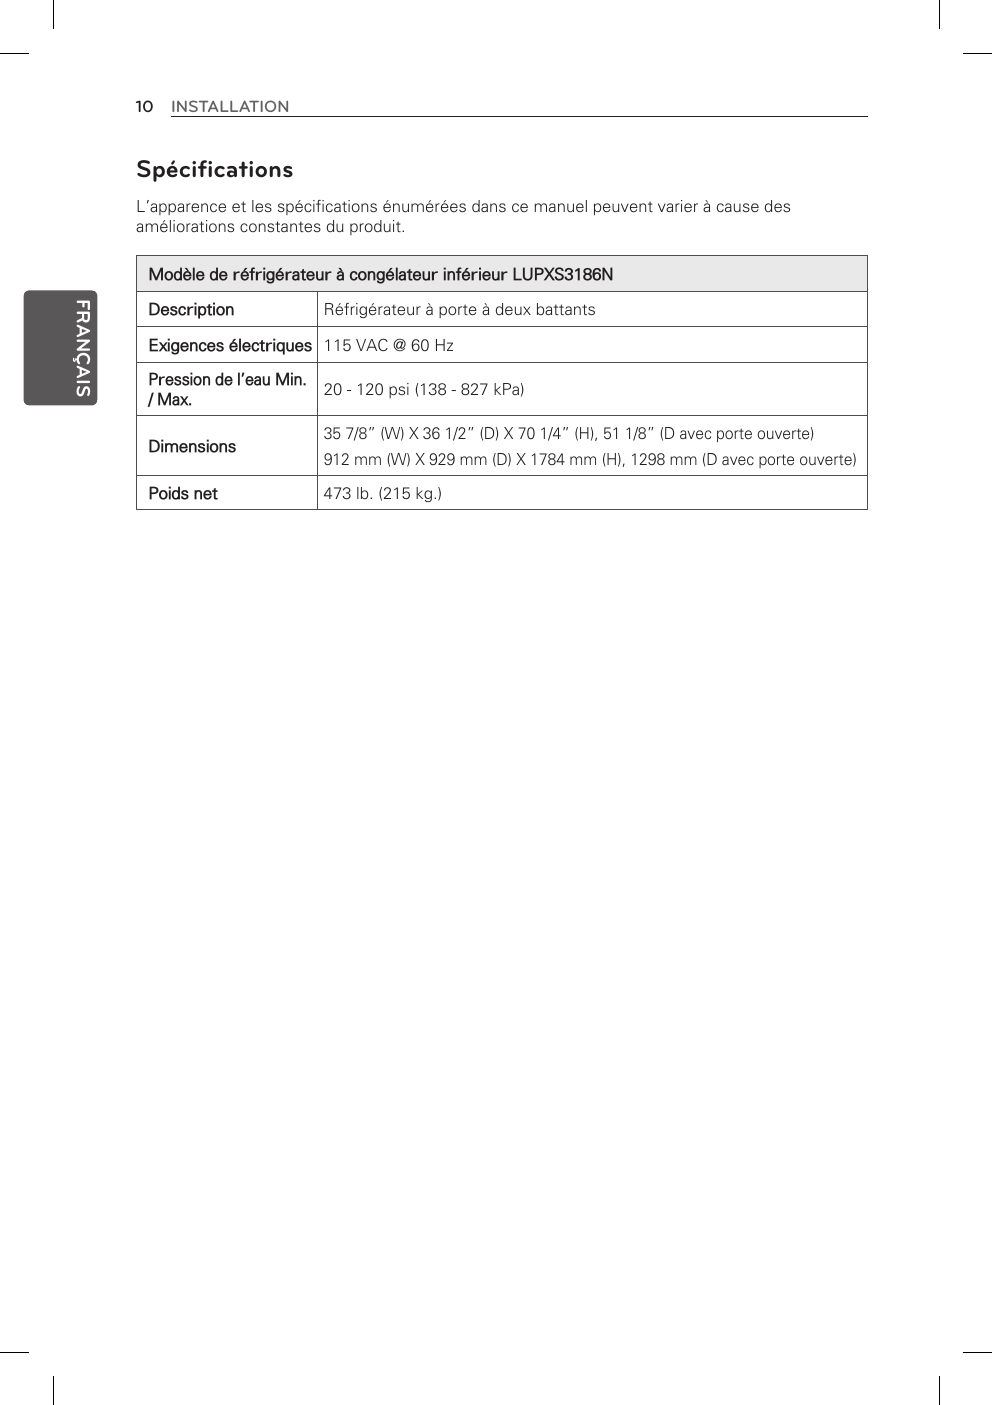 10 INSTALLATIONFRANÇAISSpécifications L’apparence et les spécifications énumérées dans ce manuel peuvent varier à cause des améliorations constantes du produit.Modèle de réfrigérateur à congélateur inférieur LUPXS3186NDescription Réfrigérateur à porte à deux battantsExigences électriques 115 VAC @ 60 HzPression de l’eau Min. / Max.20 - 120 psi (138 - 827 kPa)Dimensions35 7/8” (W) X 36 1/2” (D) X 70 1/4” (H), 51 1/8” (D avec porte ouverte) 912 mm (W) X 929 mm (D) X 1784 mm (H), 1298 mm (D avec porte ouverte)Poids net 473 lb. (215 kg.) 